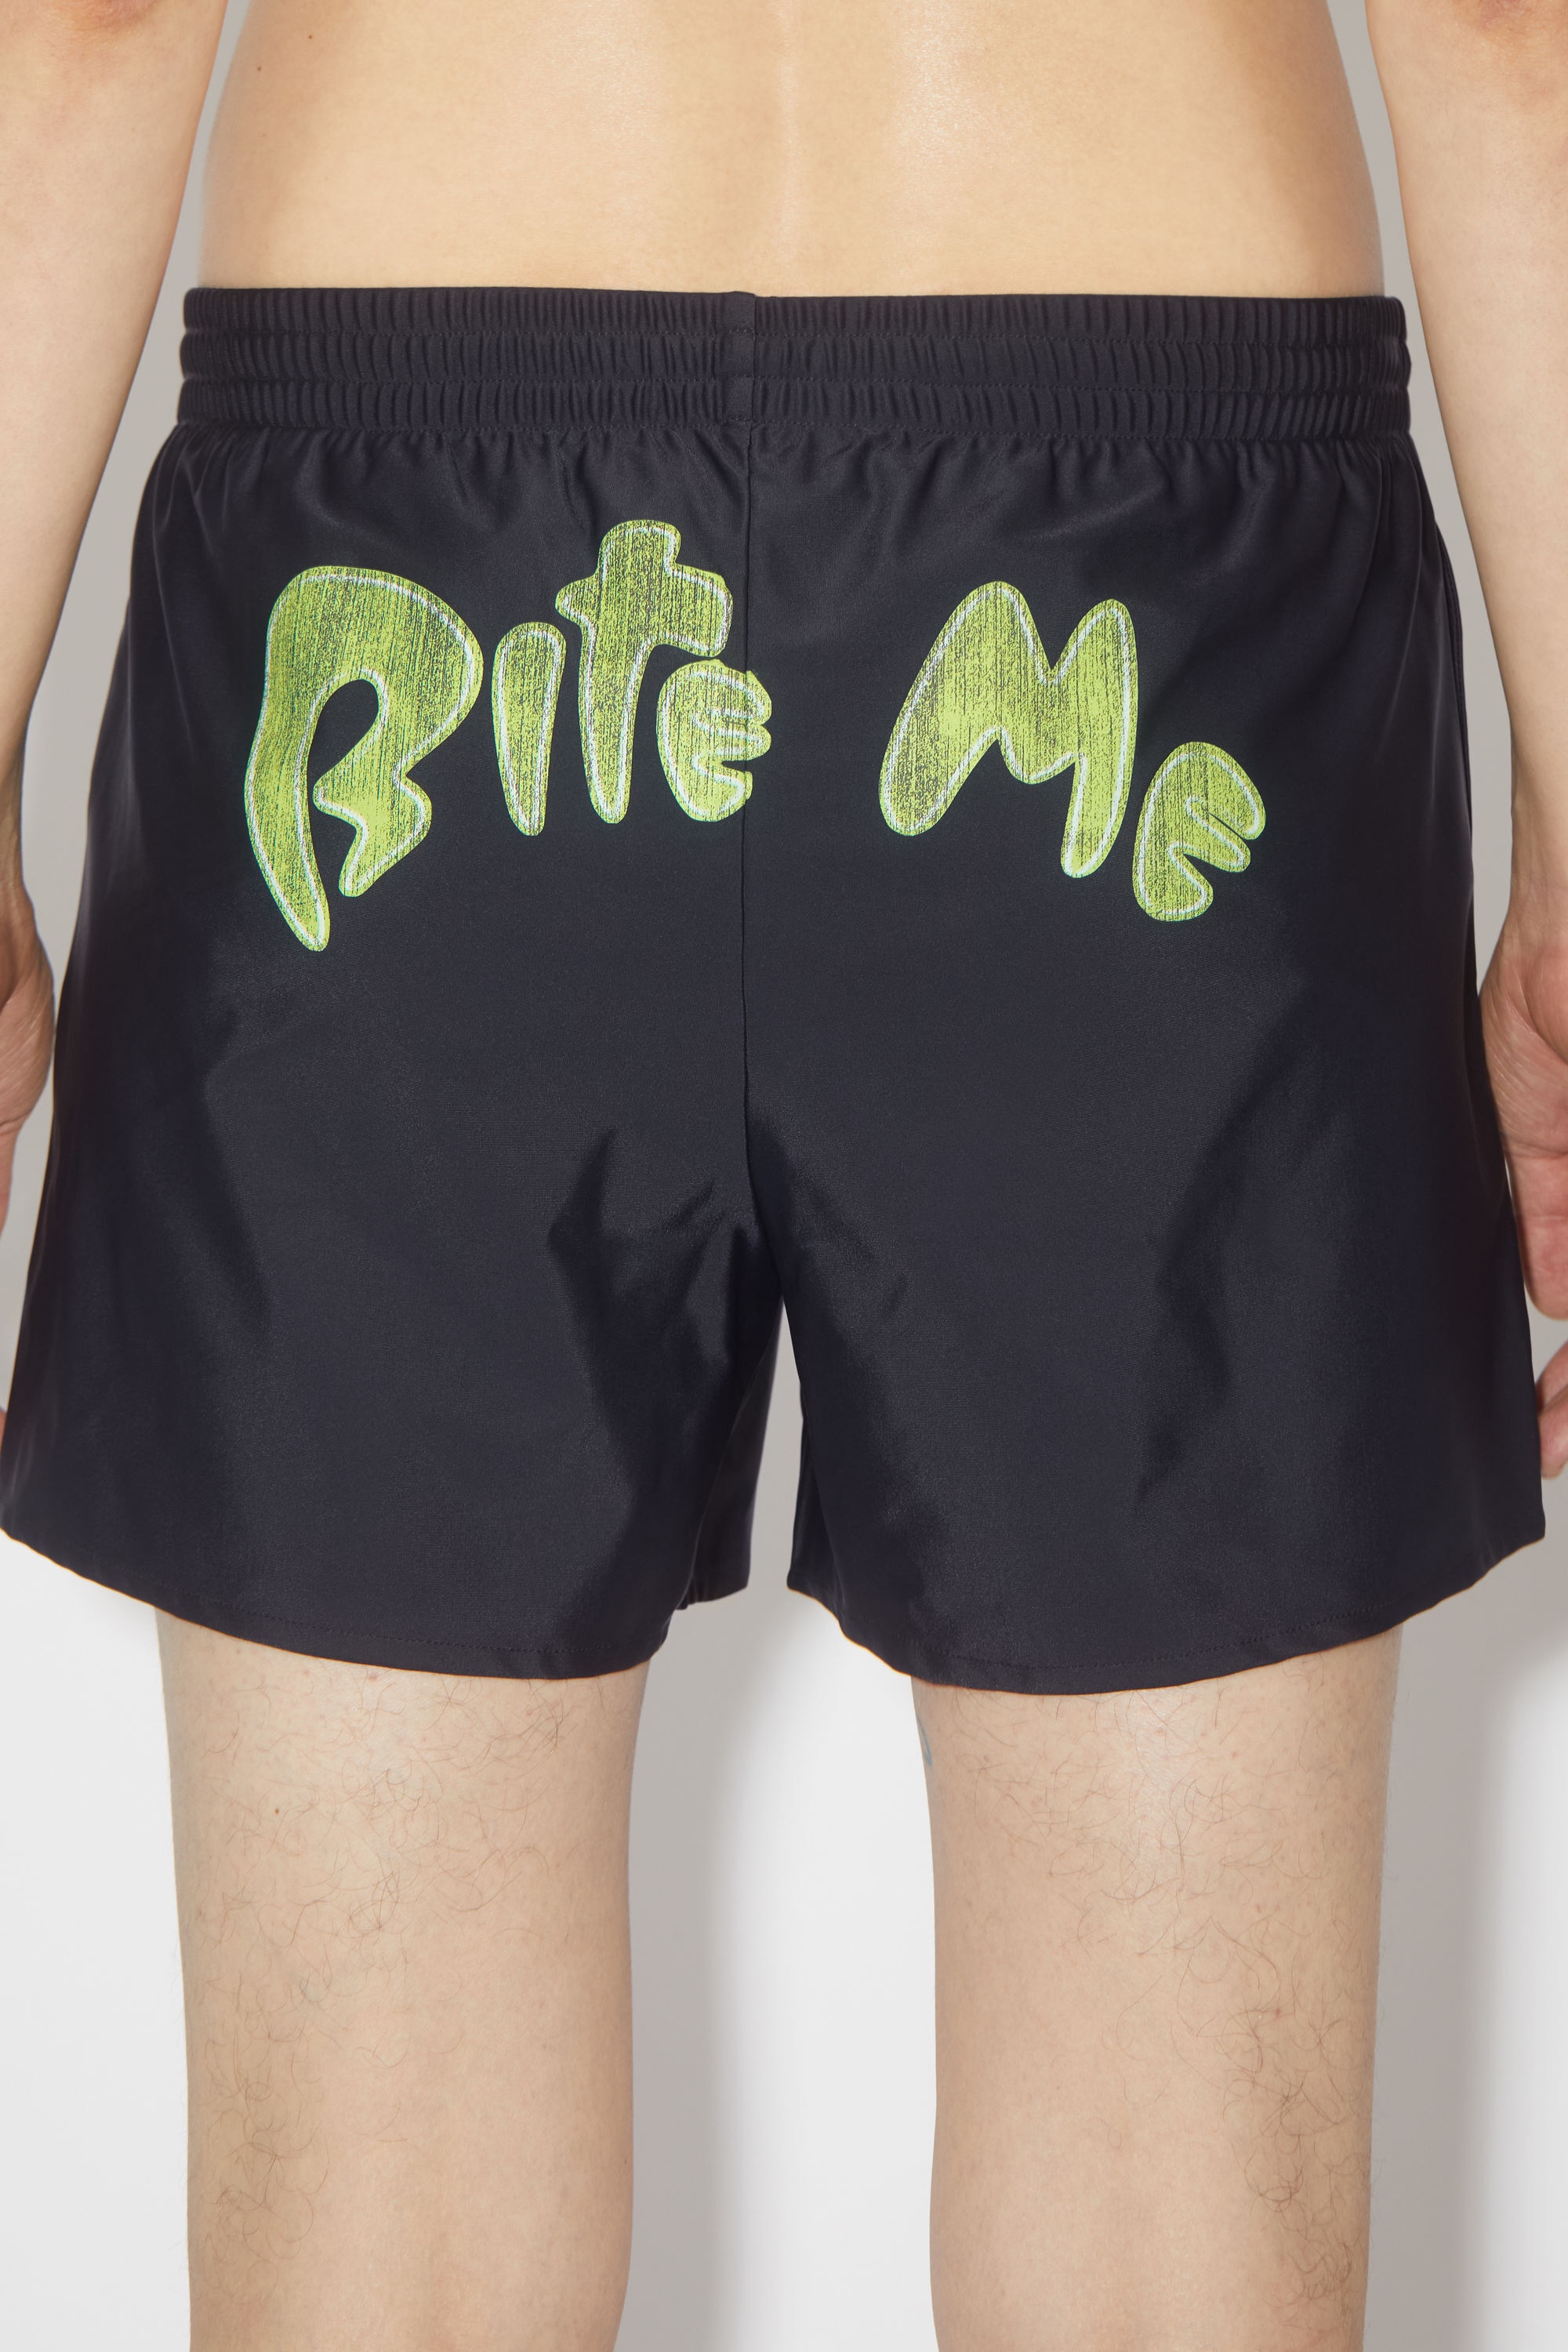 Bite me print swim shorts - Black - 3